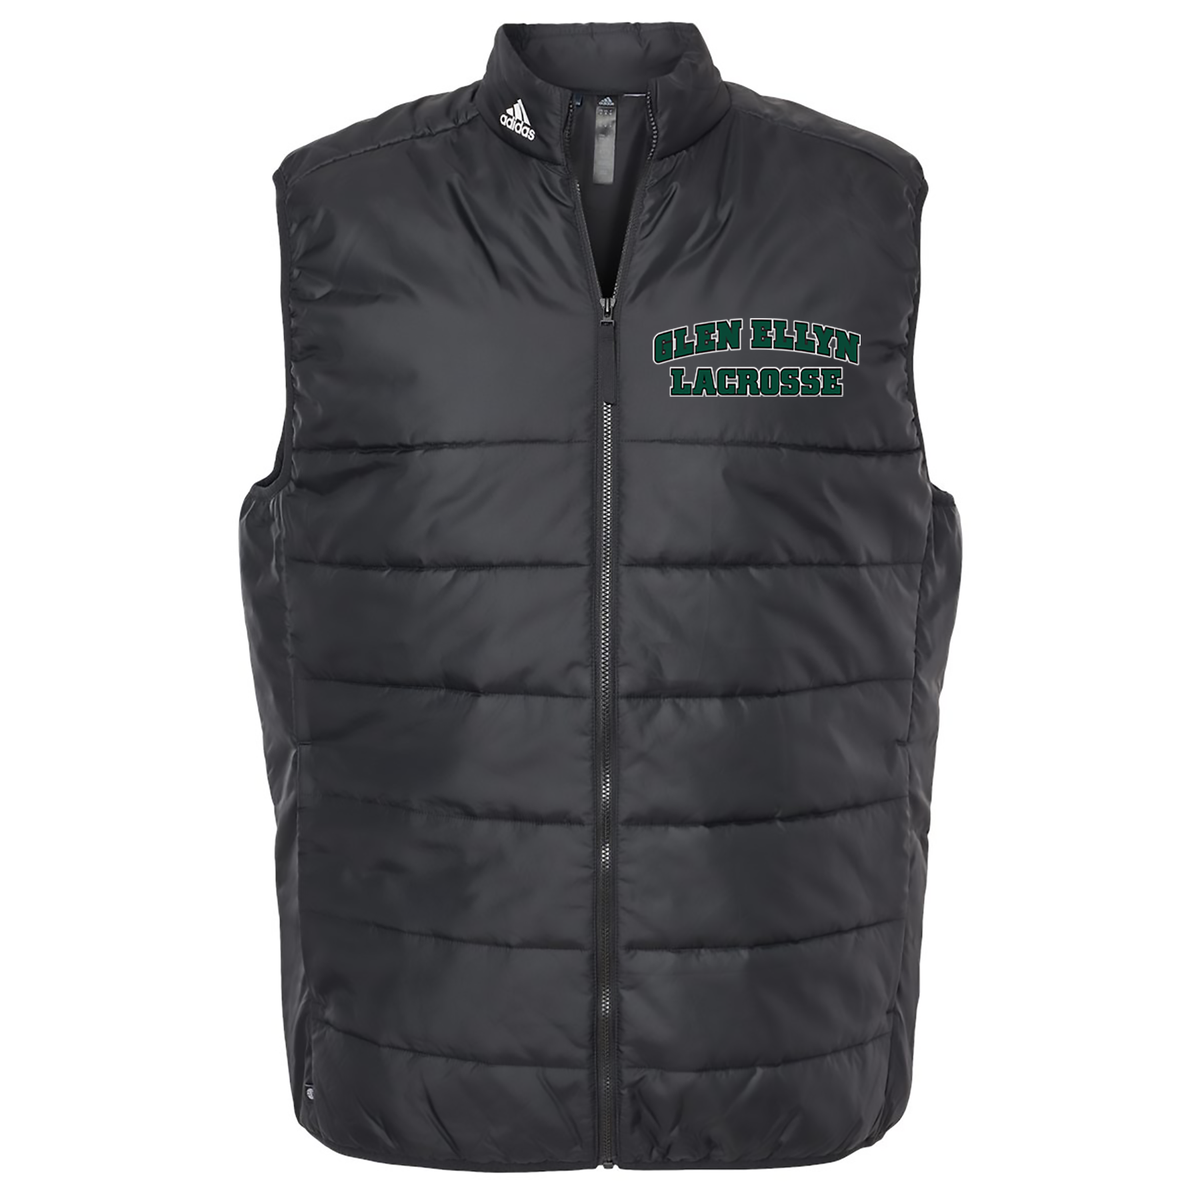 Glen Ellyn Bulldogs Lacrosse Adidas Men's Puffer Vest